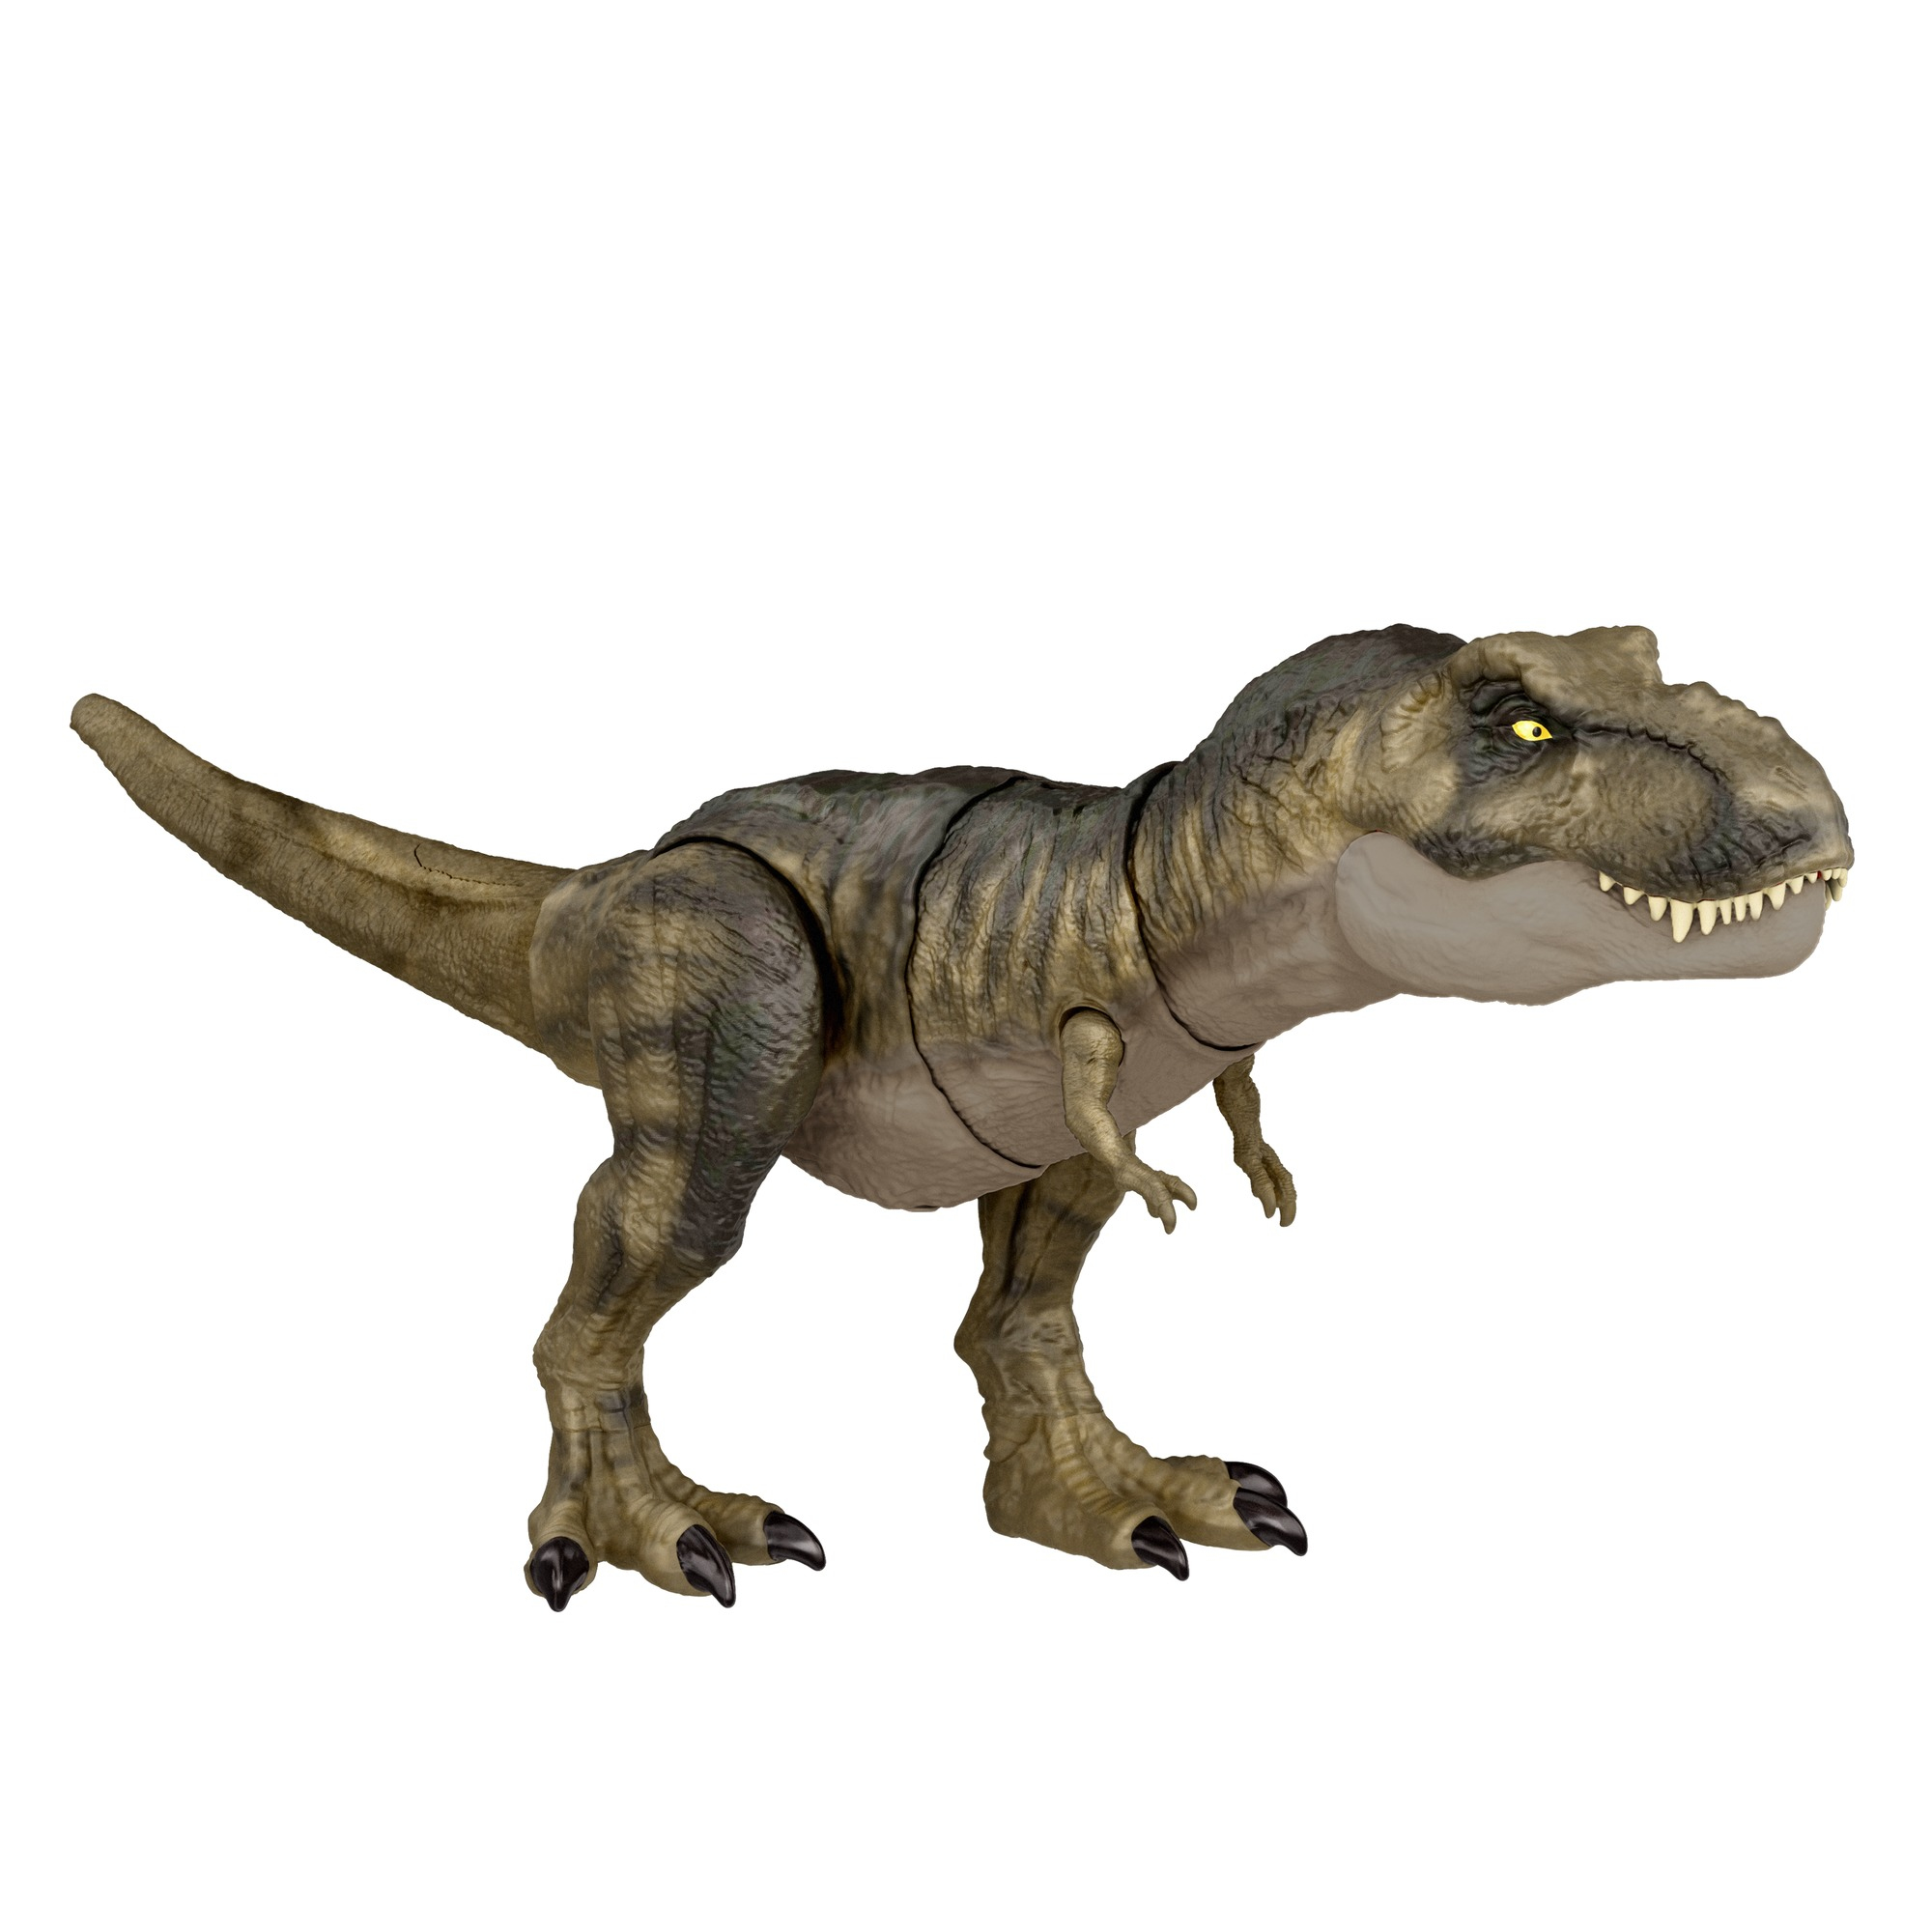 Ce dinosaure vu dans Jurassic Park avait plutôt cette tête